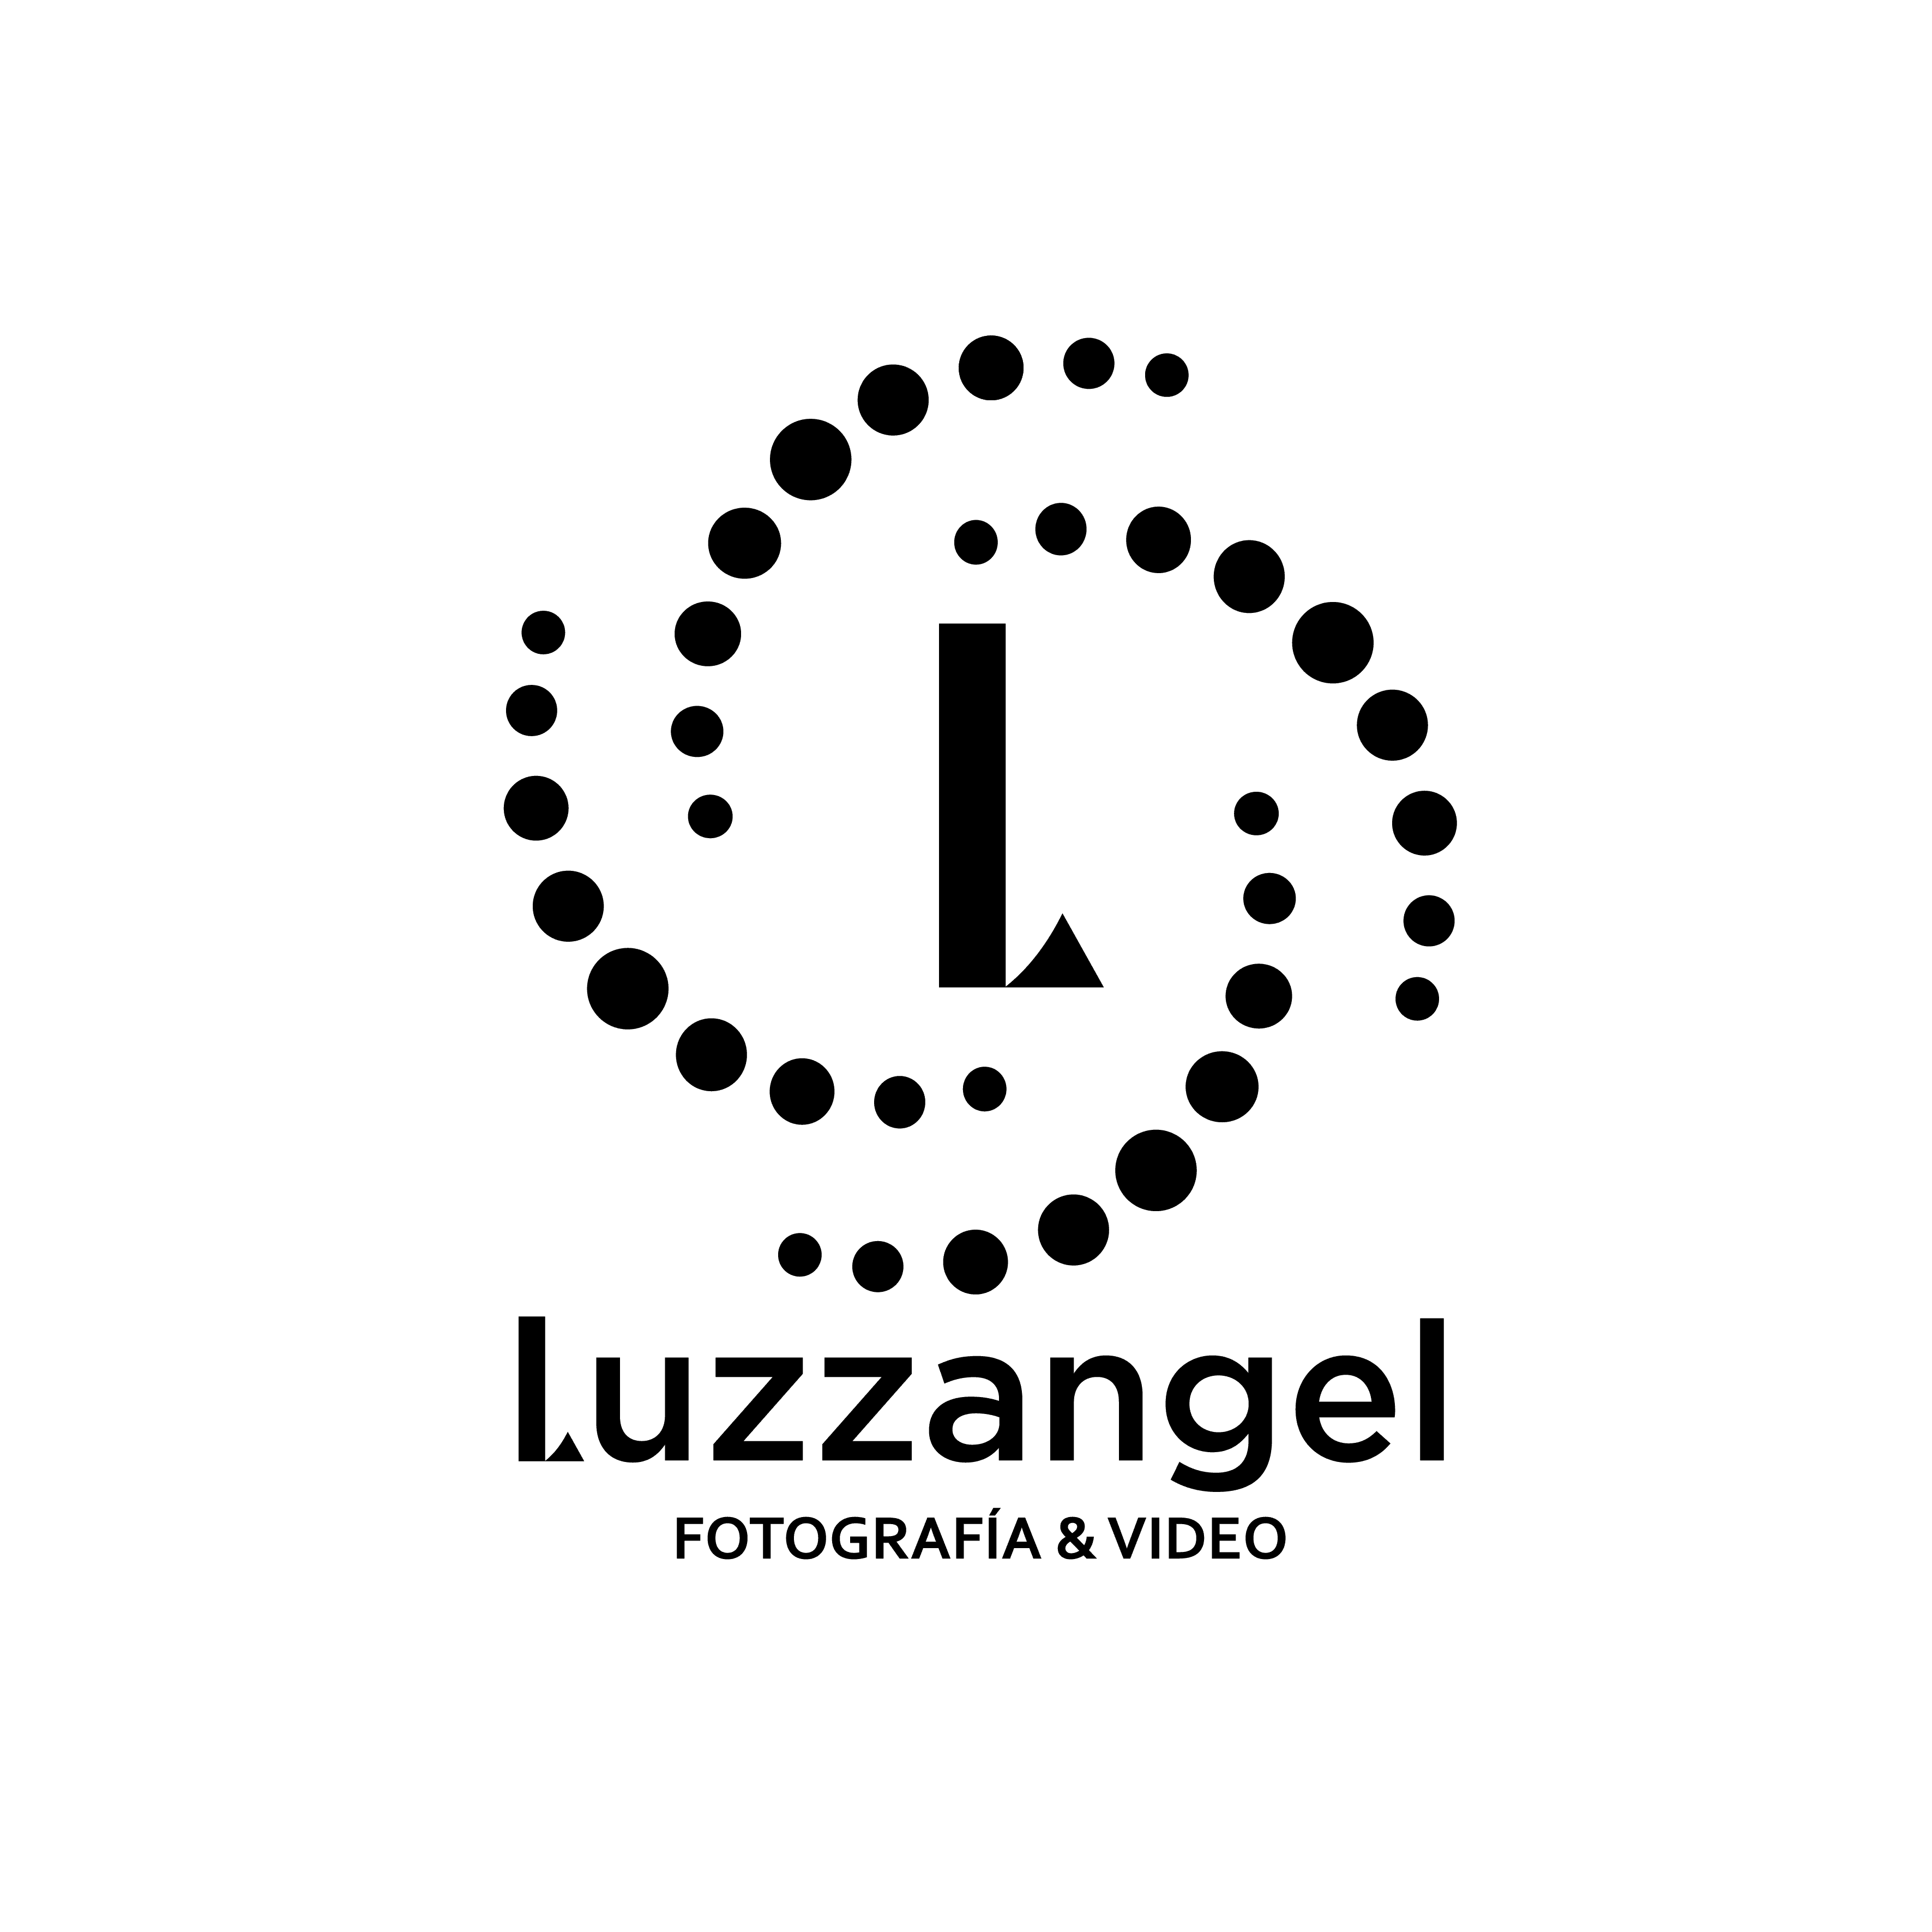 Luzzangel